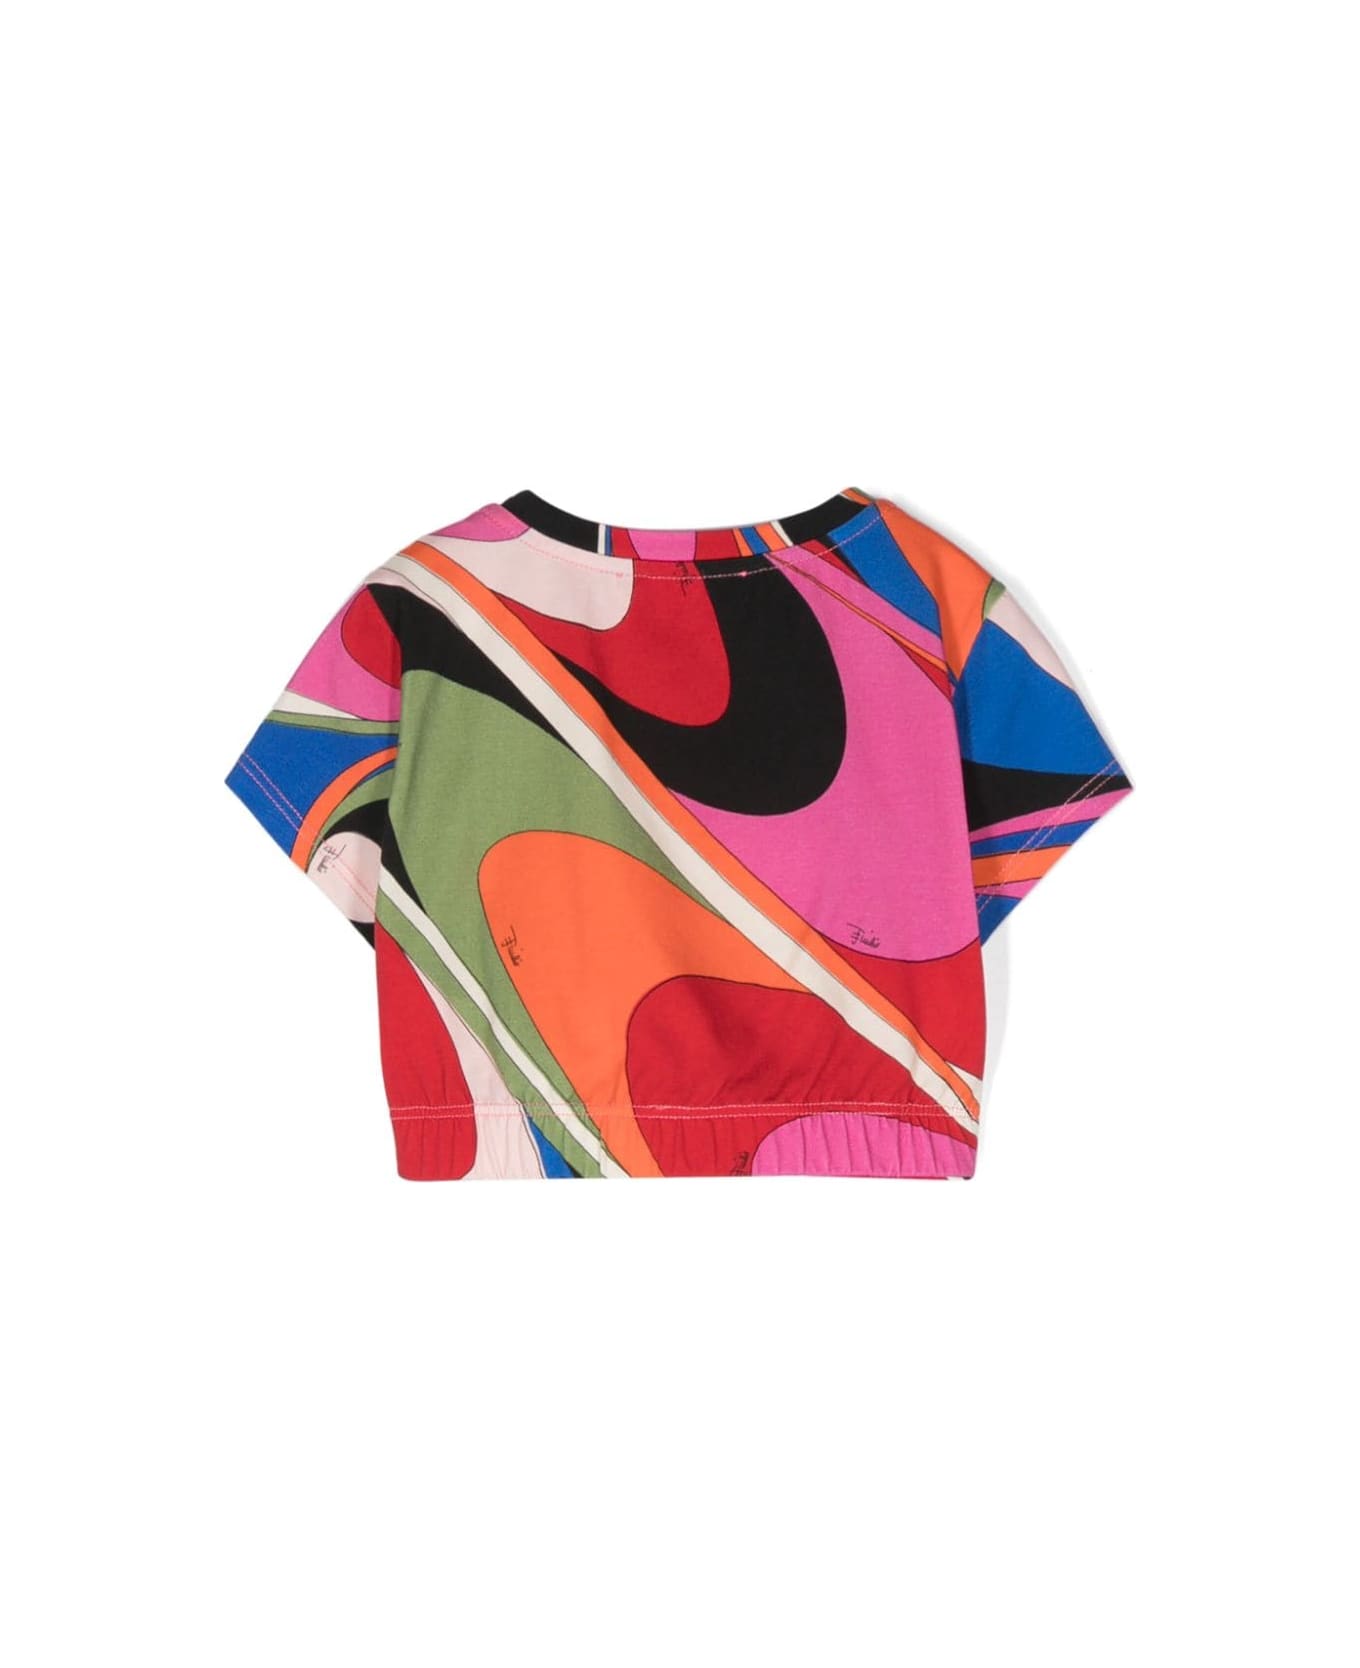 Pucci T-shirt Con Stampa - Multicolor Tシャツ＆ポロシャツ